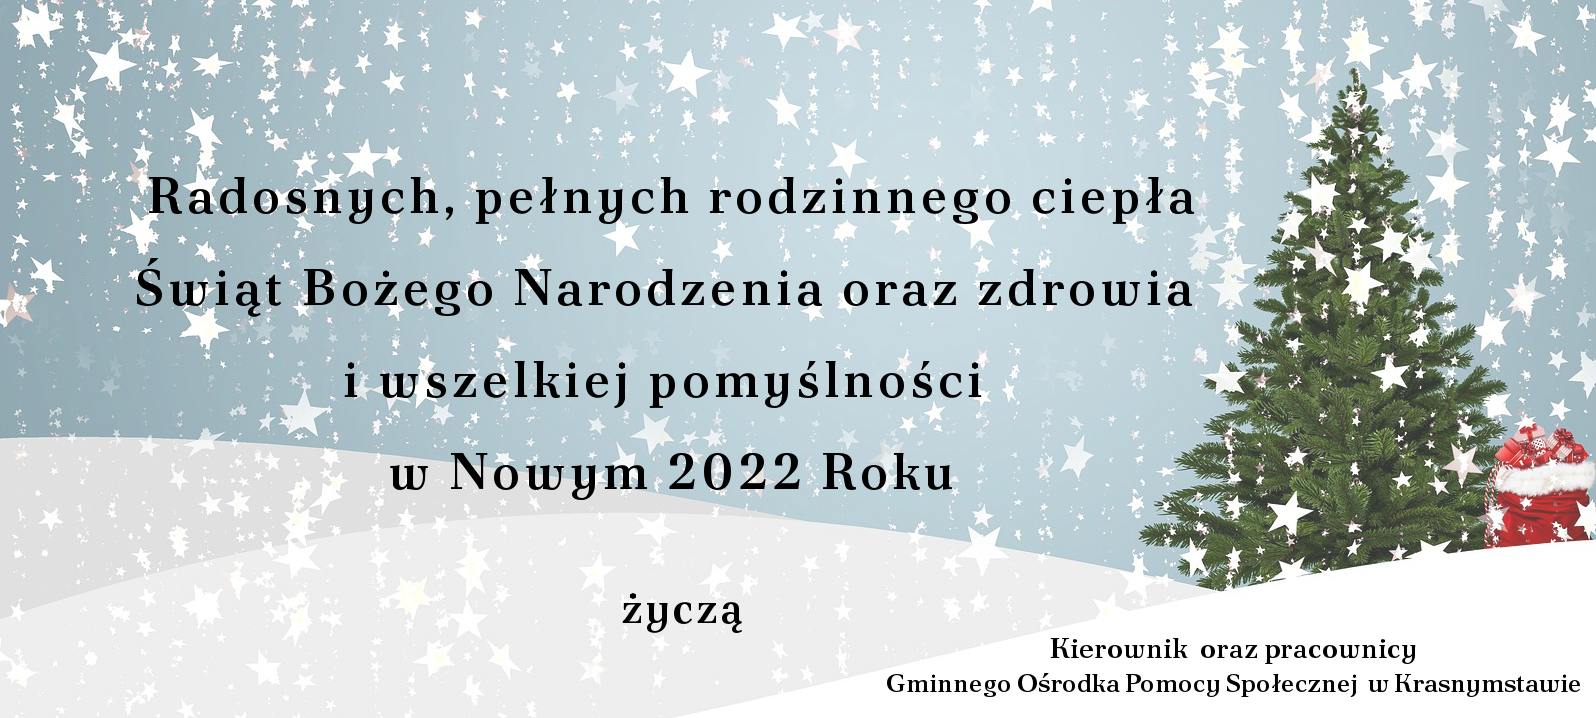 Radosnych, pełnych rodzinnego ciepła Świąt Bożego Narodzenia oraz zdrowia i wszelkiej pomyślności w Nowym 2022 Roku